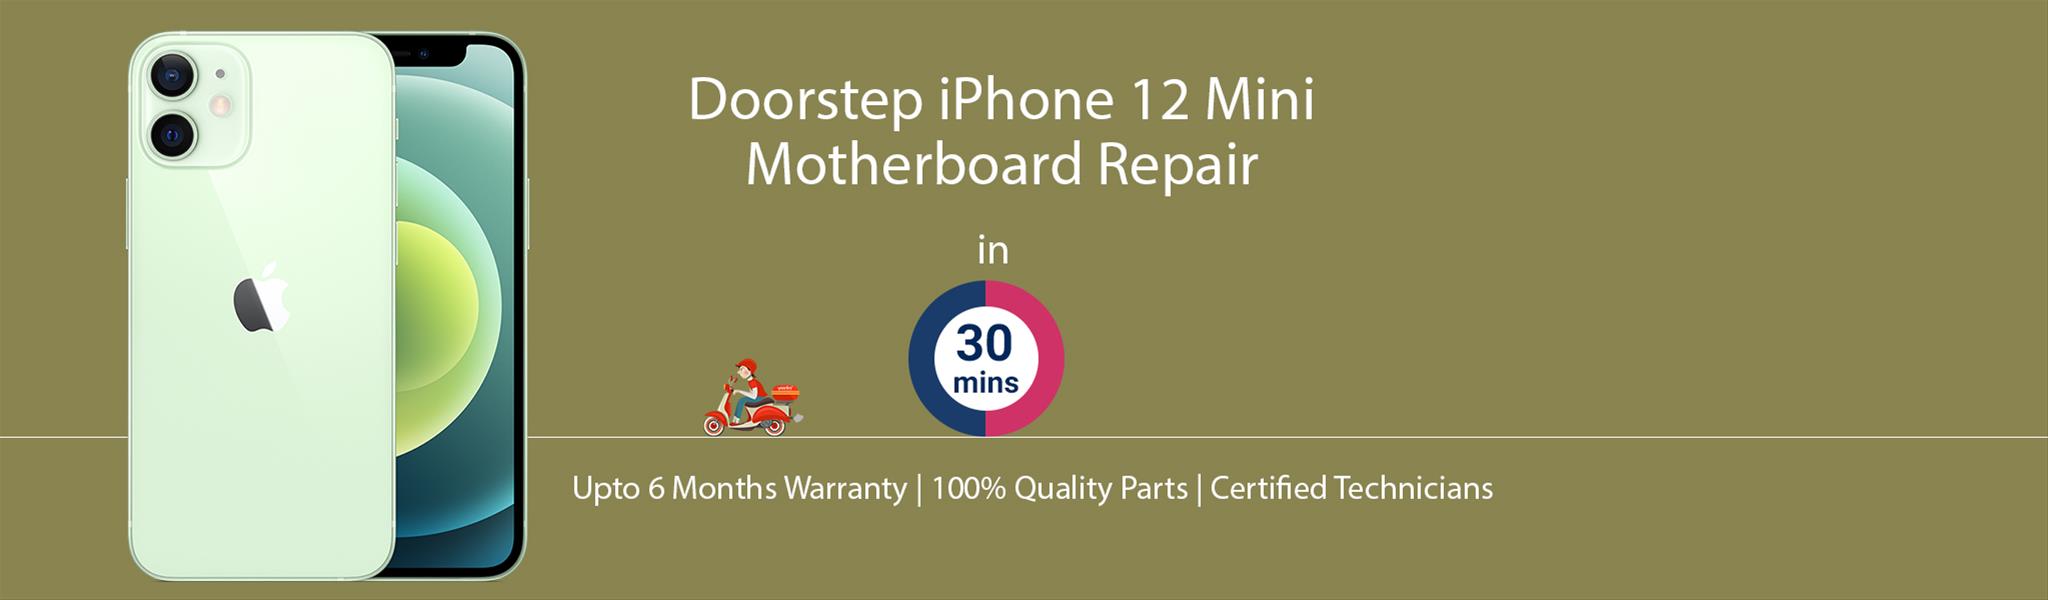 iphone-12-mini-motherboard-repair.jpg